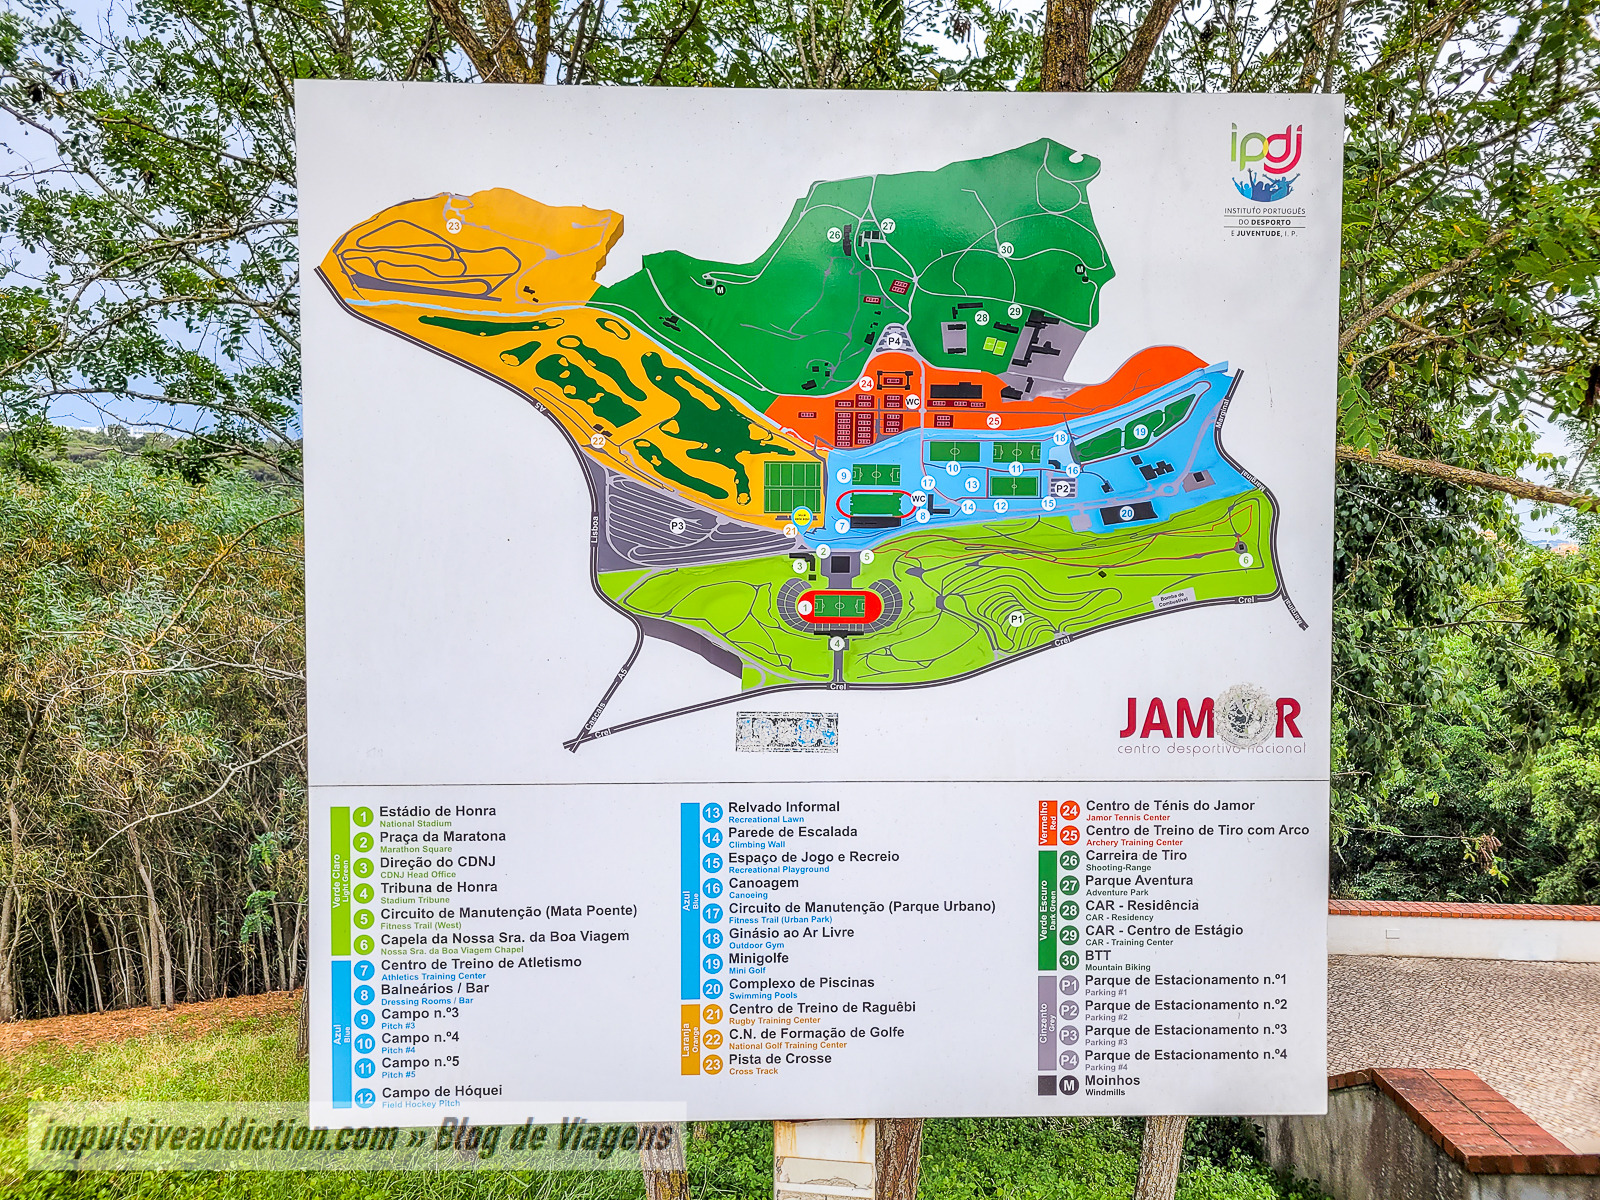 Jamor - Parque Urbano / Centro Náutico e de Desportos